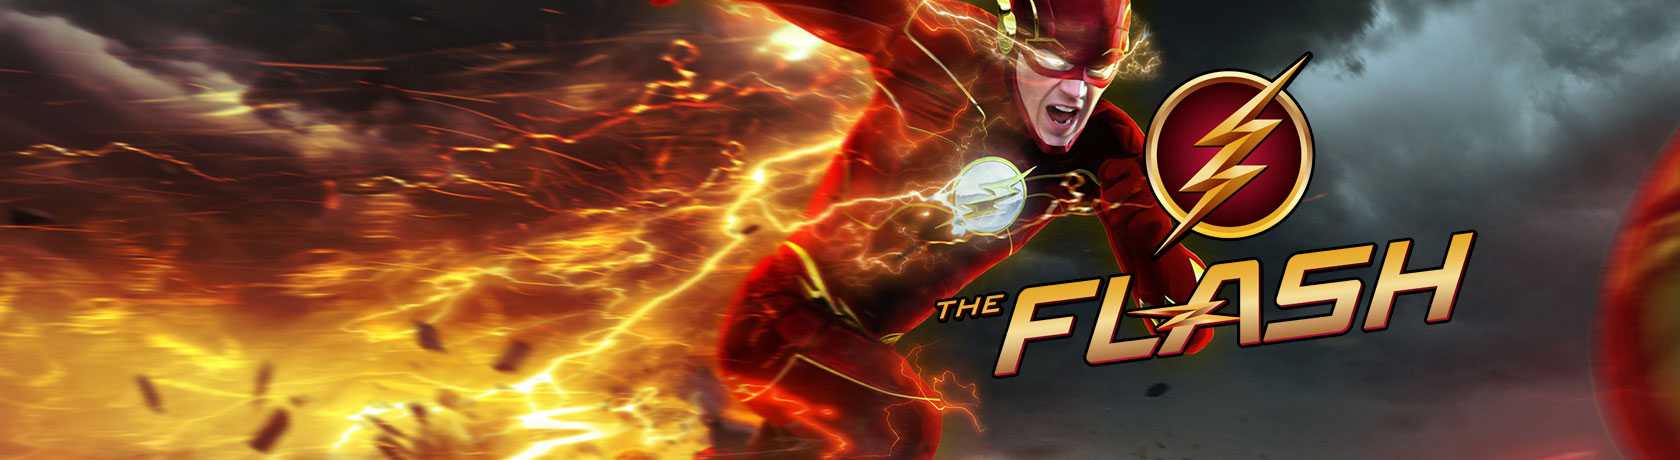 The Flash 8.Sezon 15.Bölüm izle